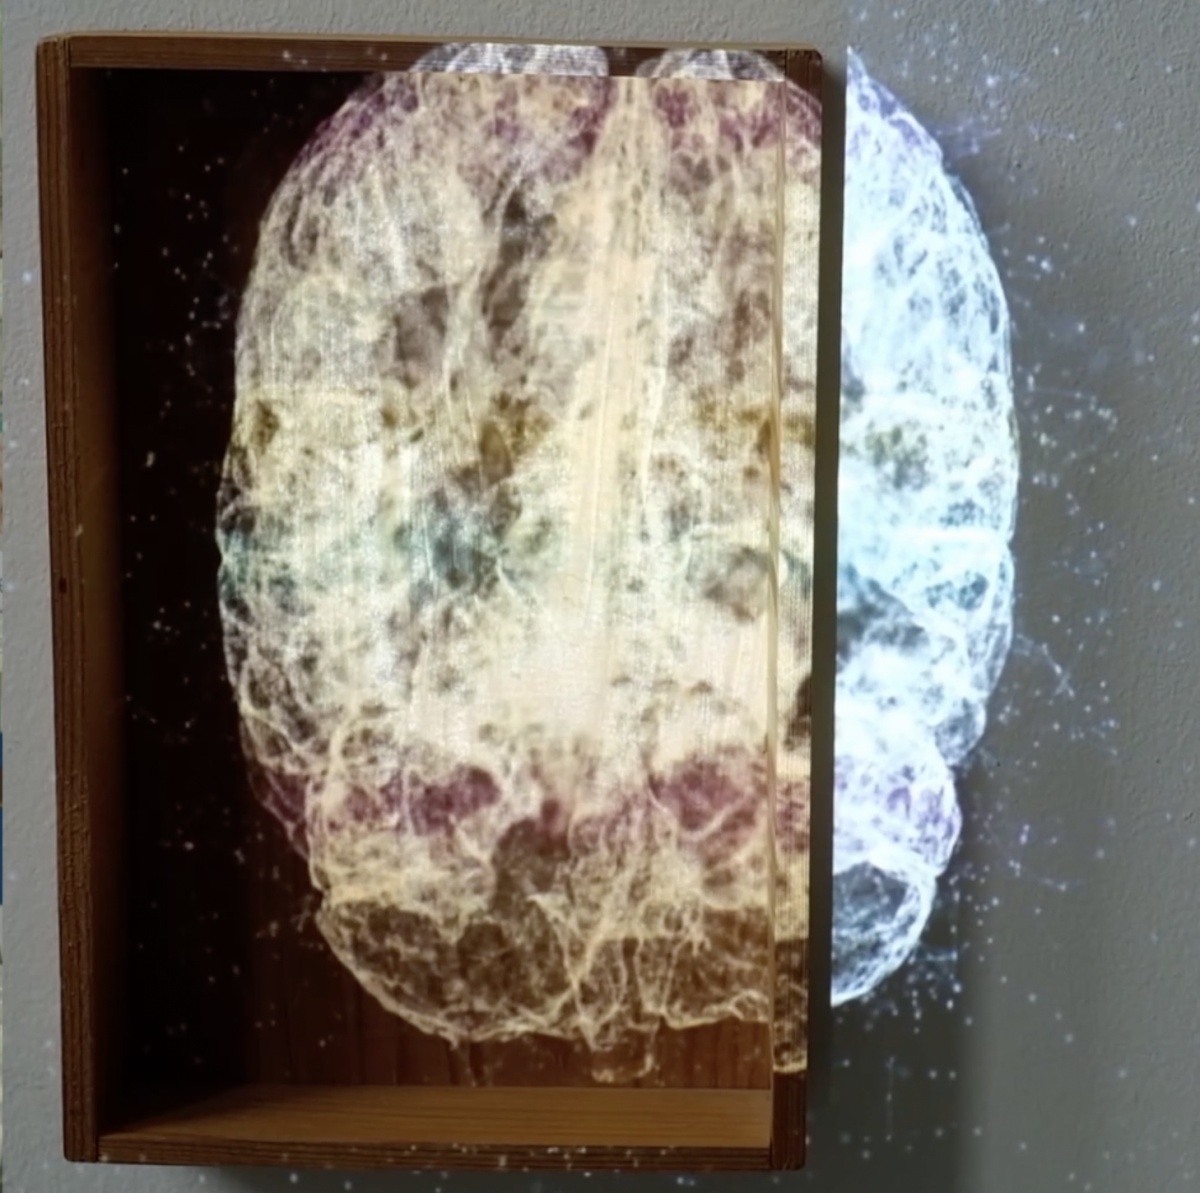 Montage: Gehirn über Beuys' Intutionskiste. Ausschnitt aus Video von Jürgen Grölle